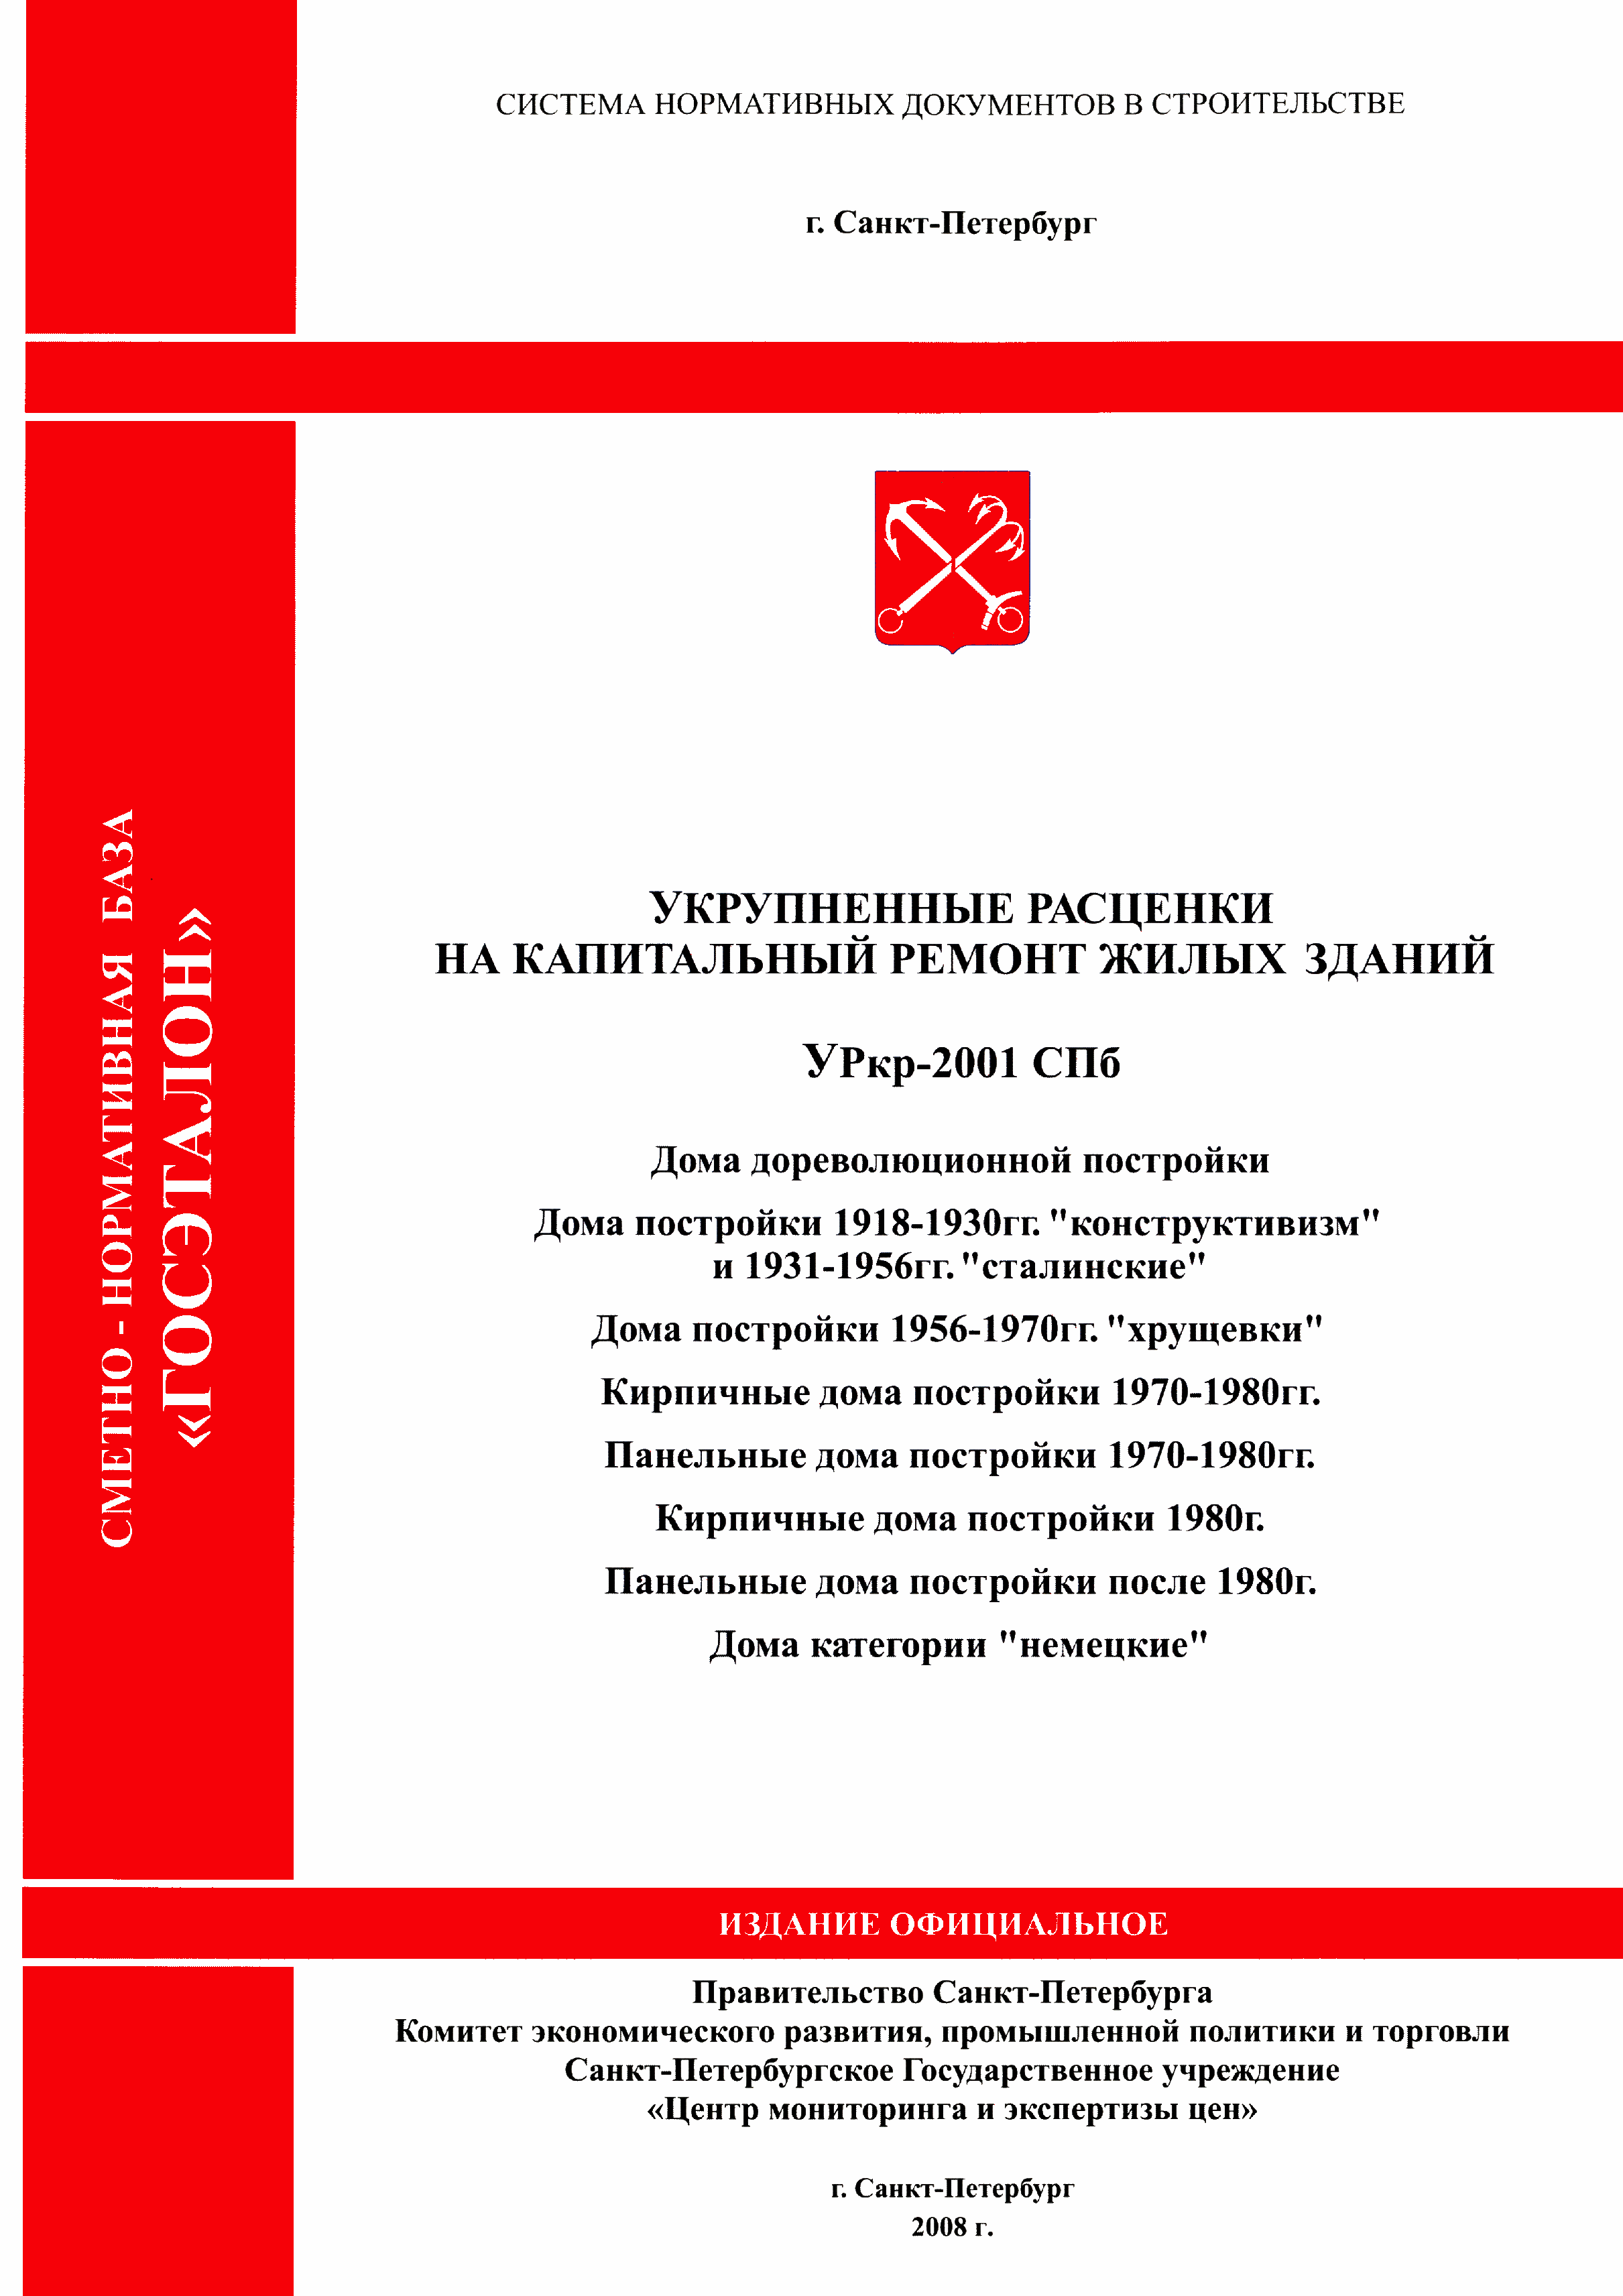 УРкр 05-2001 СПб